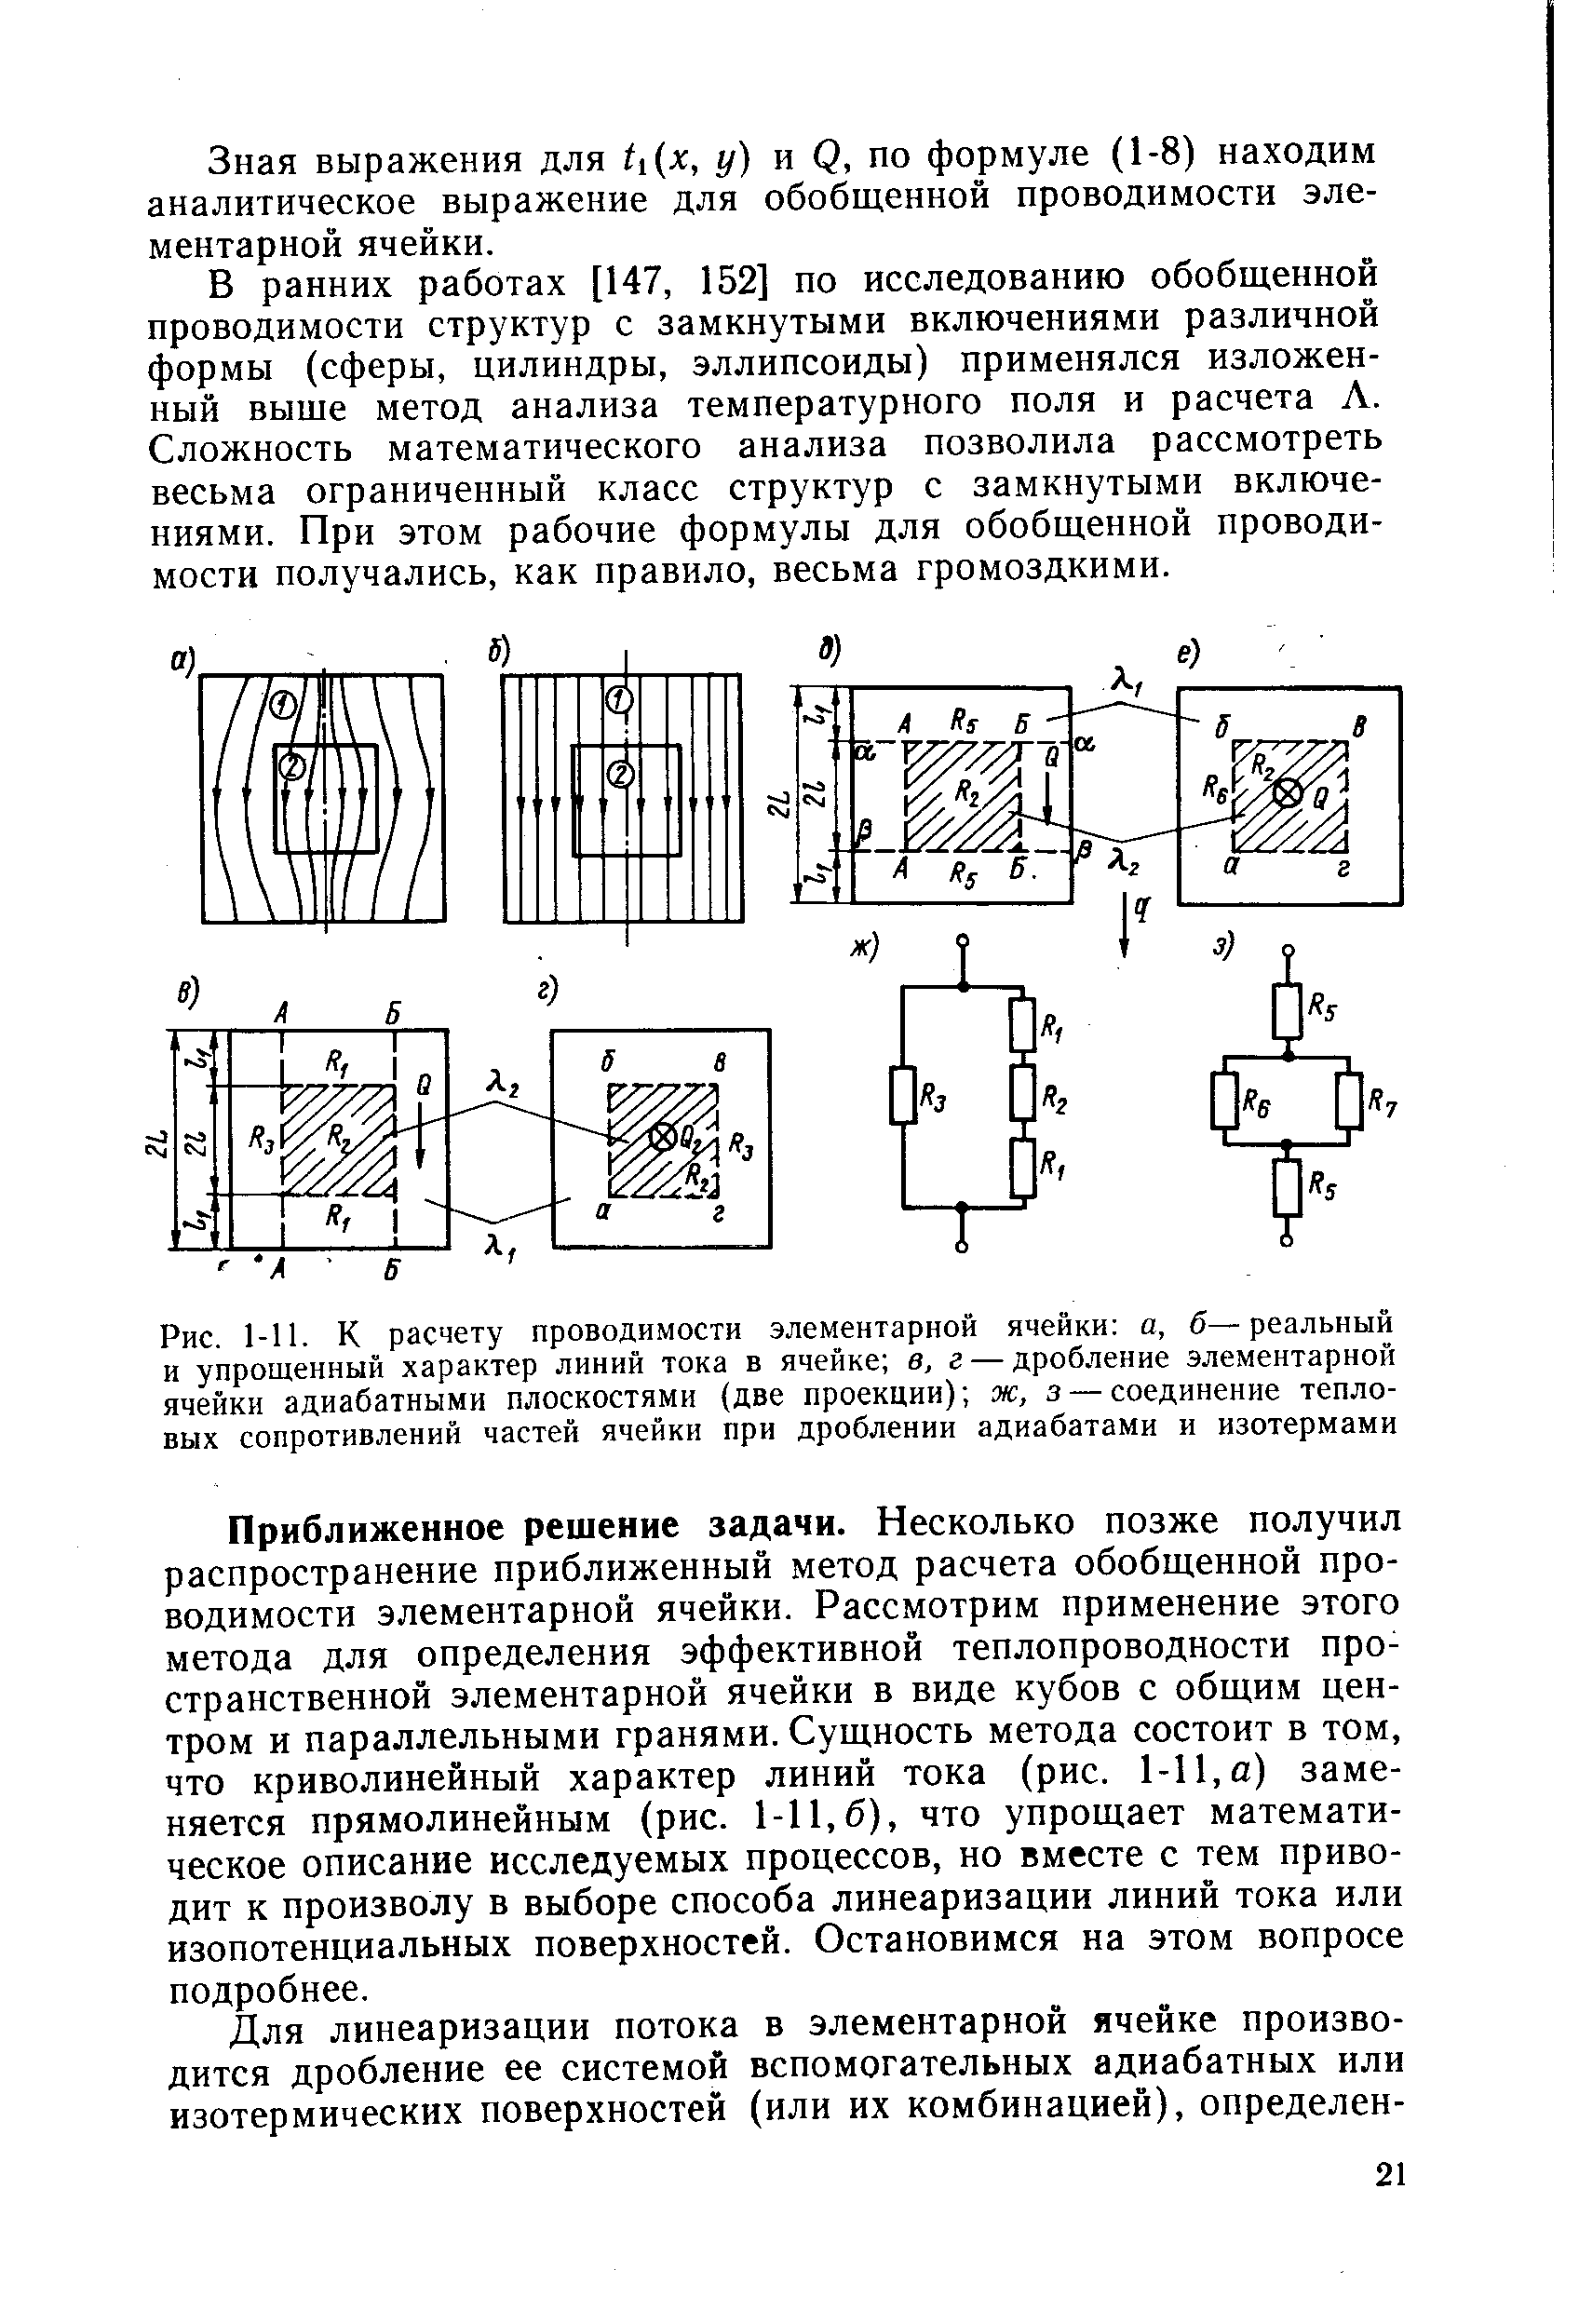 Зная выражения для Л (л , у) и Q, по формуле (1-8) находим аналитическое выражение для обобщенной проводимости элементарной ячейки.
